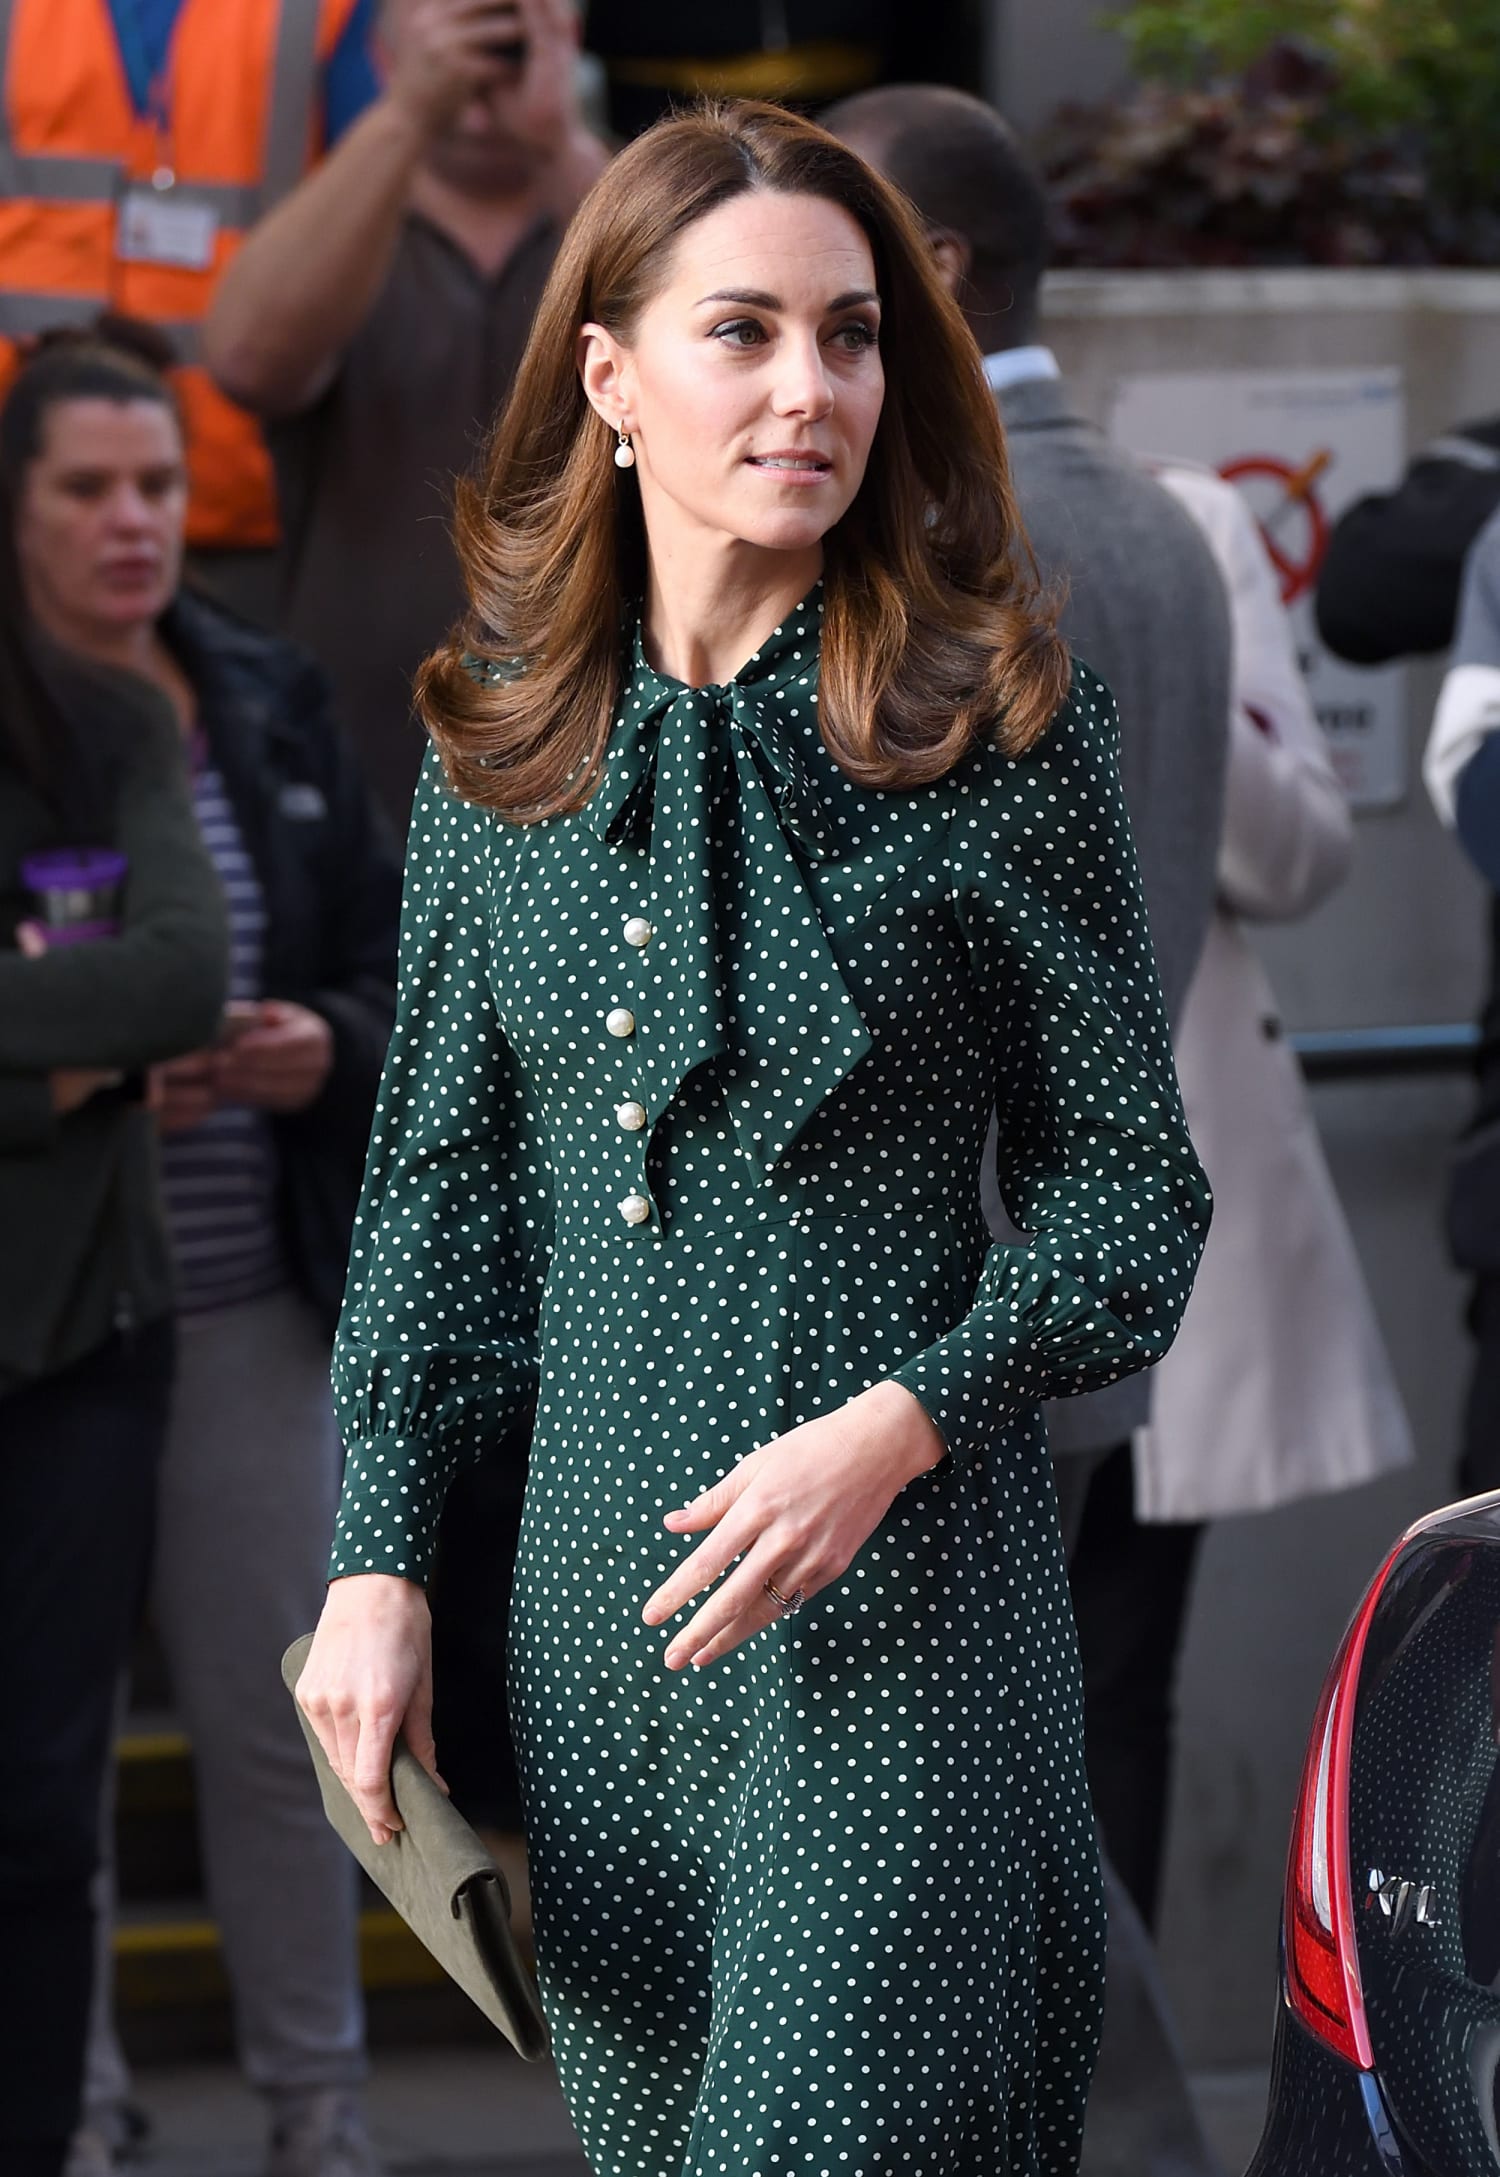 Former Kate Middleton wears polka dot dress for Christmas